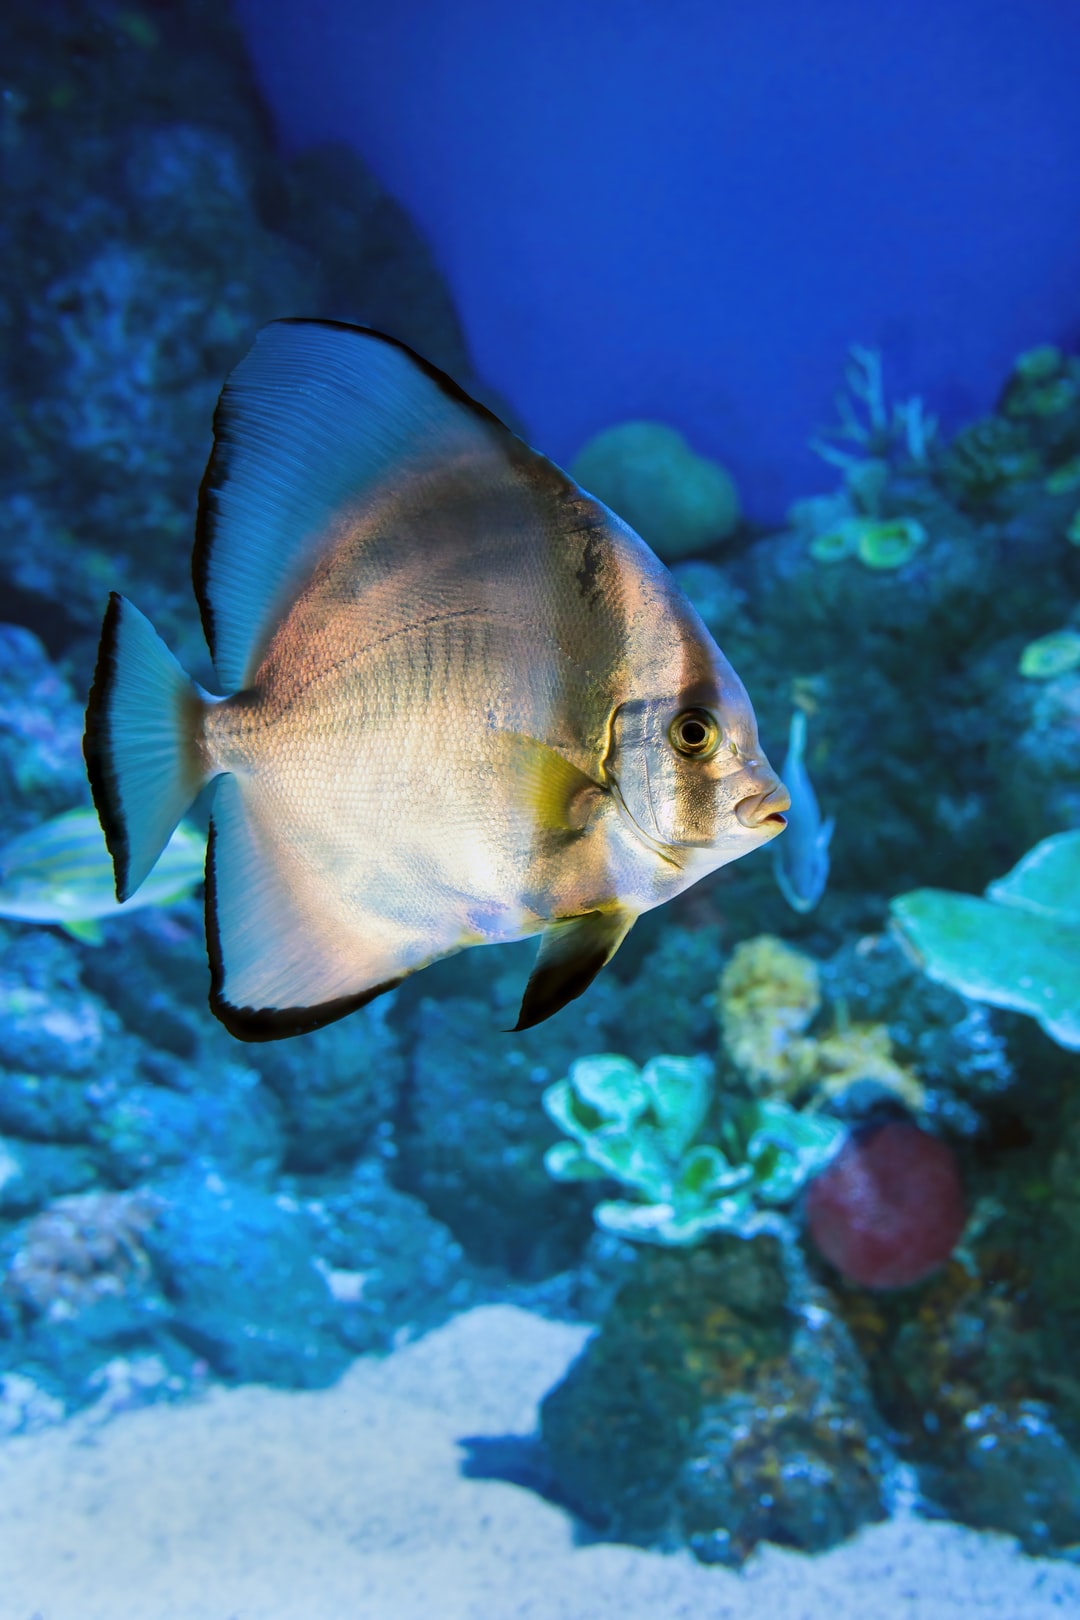 25 wichtige Fragen zu Wie Oft Aquarium Reinigen